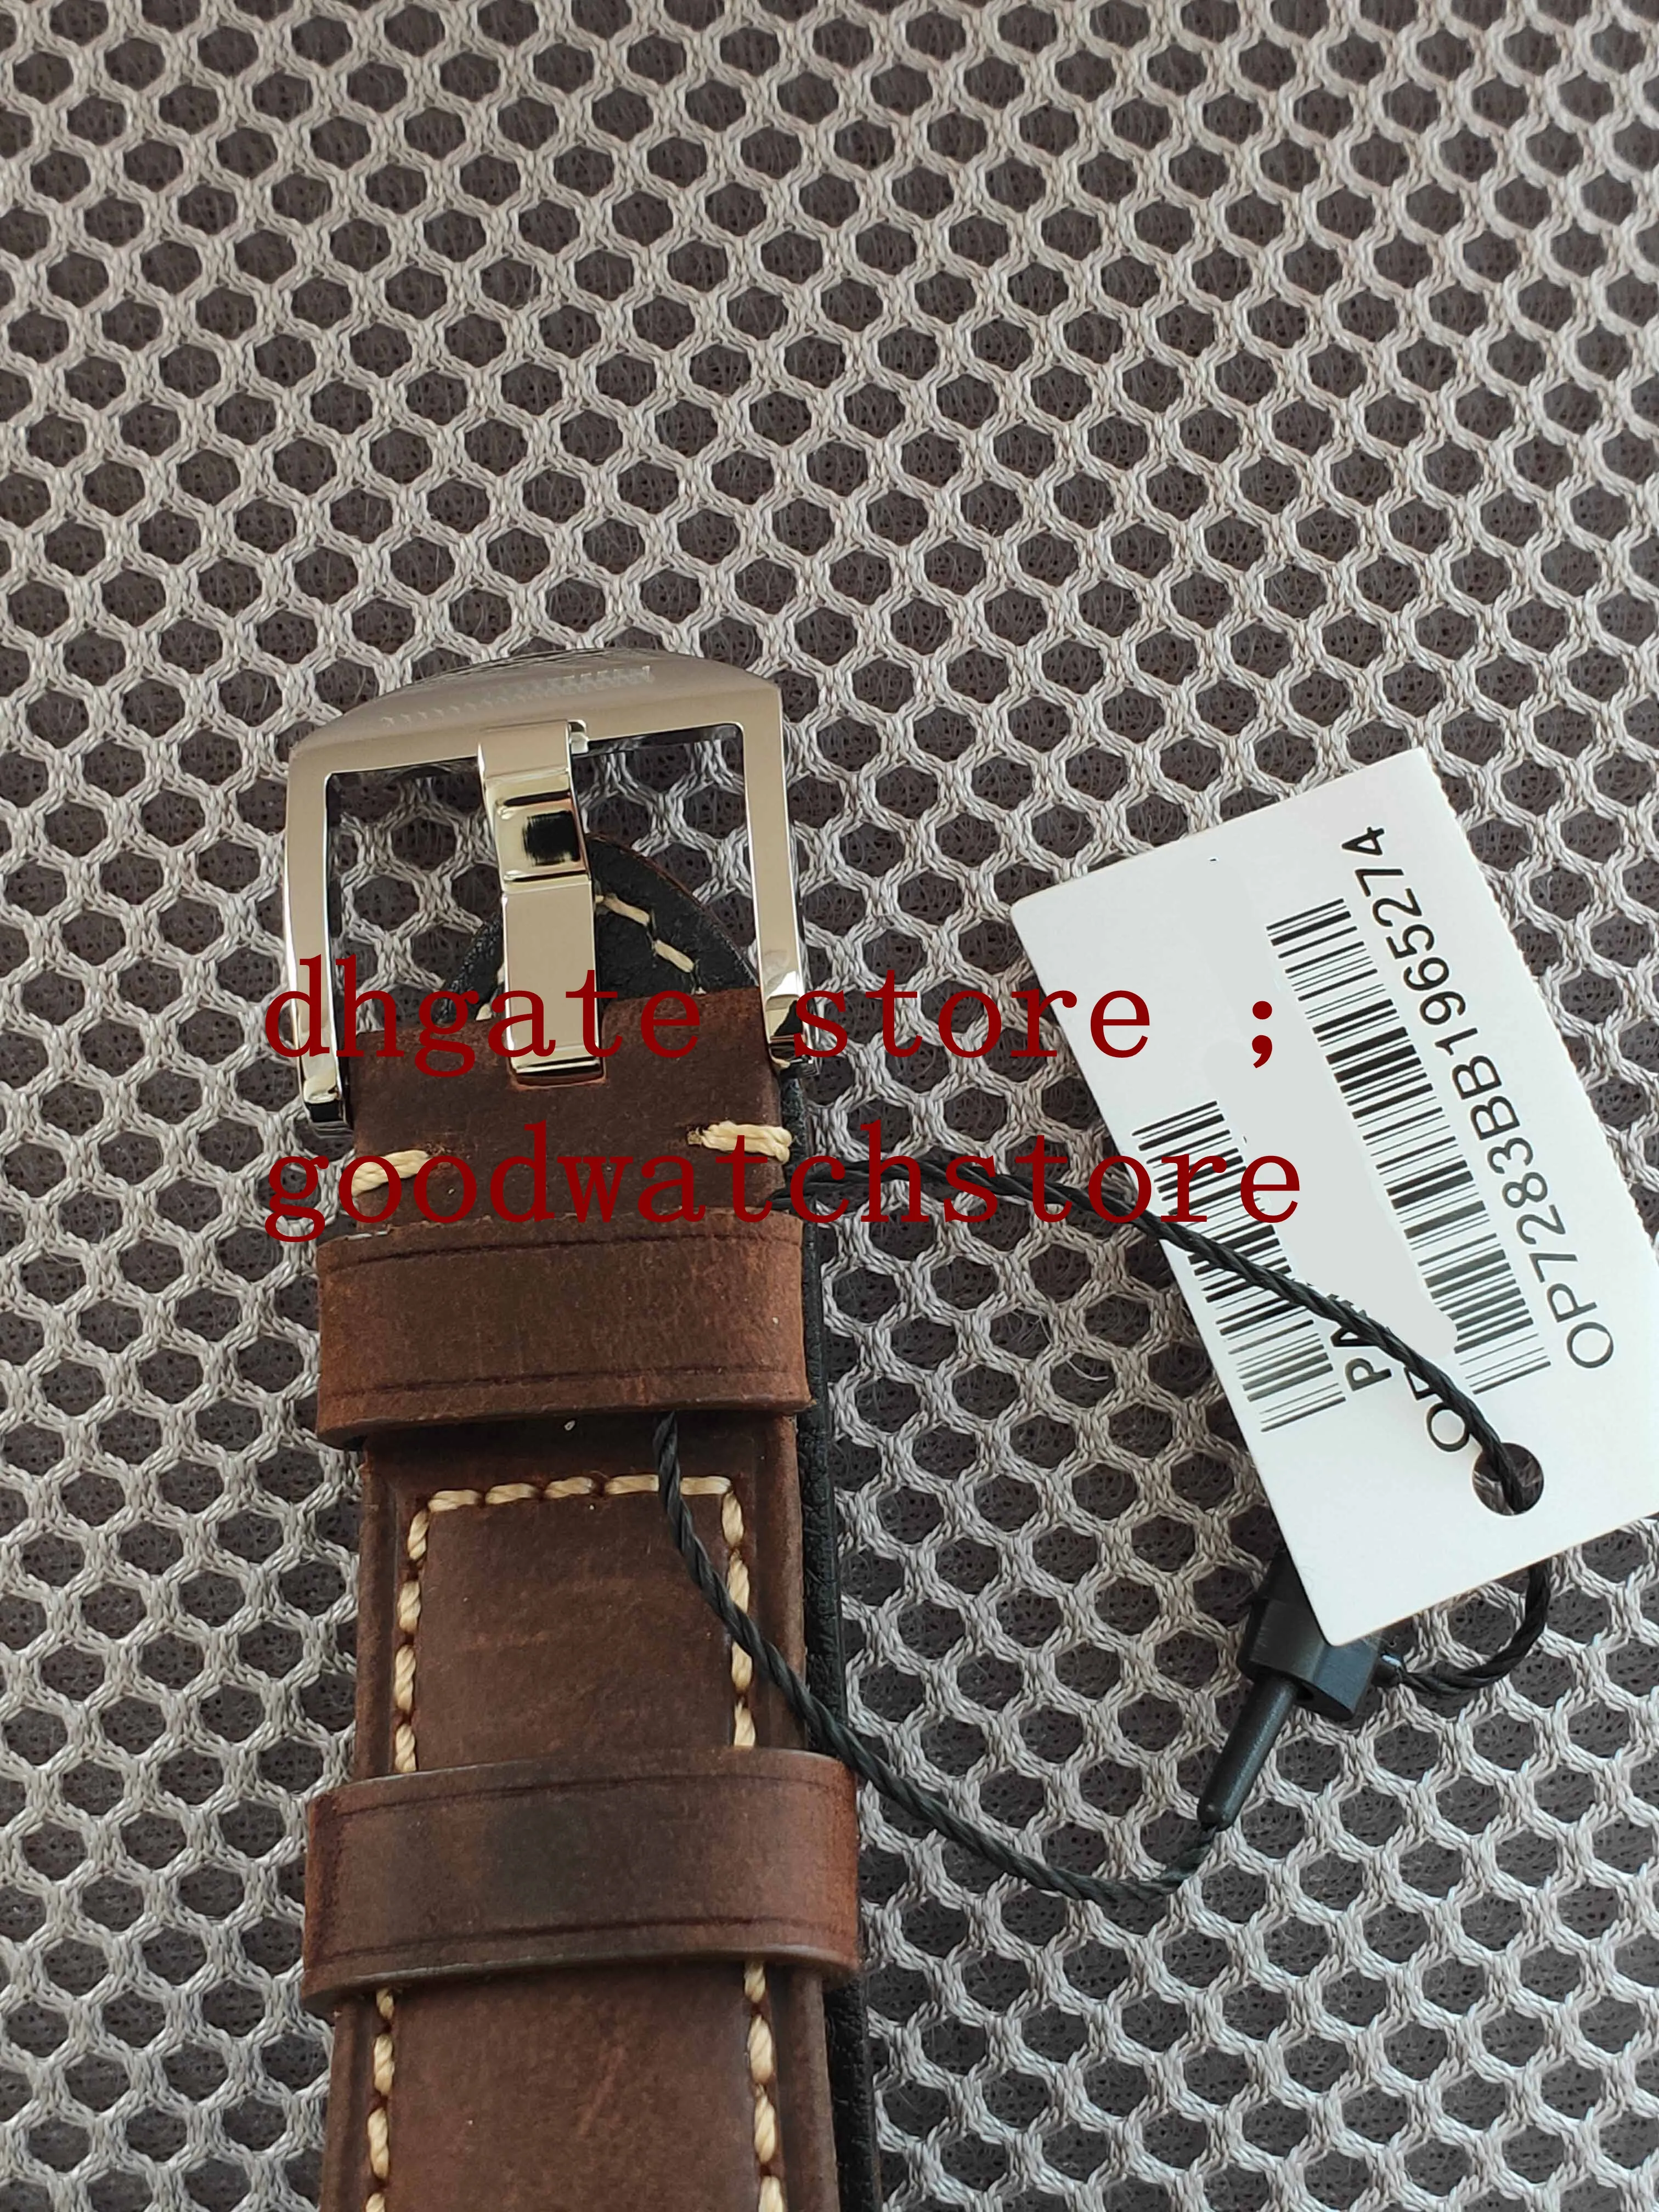 Relógios de pulso masculinos de luxo 42mm vs eta cal p900 masculino automático mostrador branco em relevo croc impressão bezerro couro marrom profissional 2726